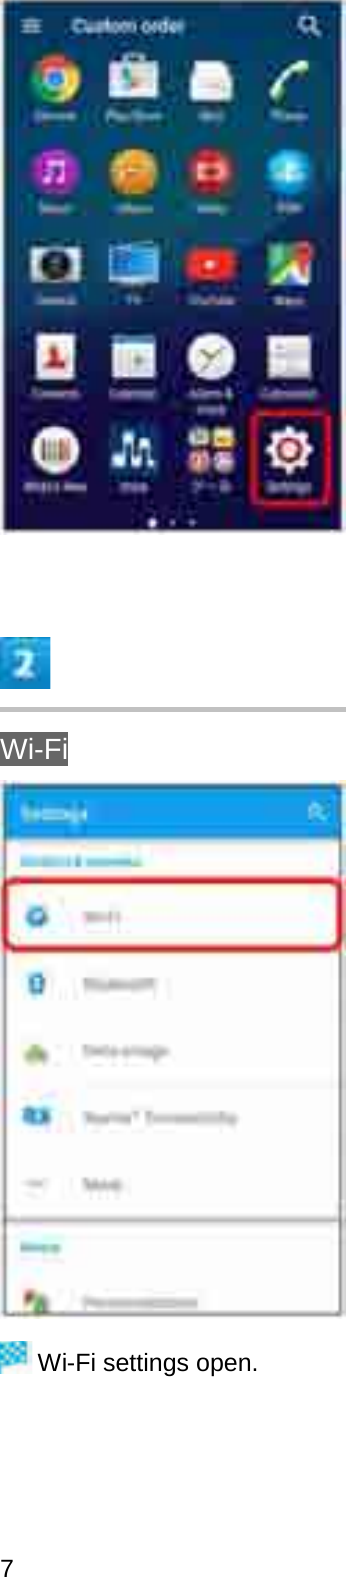 Wi-FiWi-Fi settings open.7